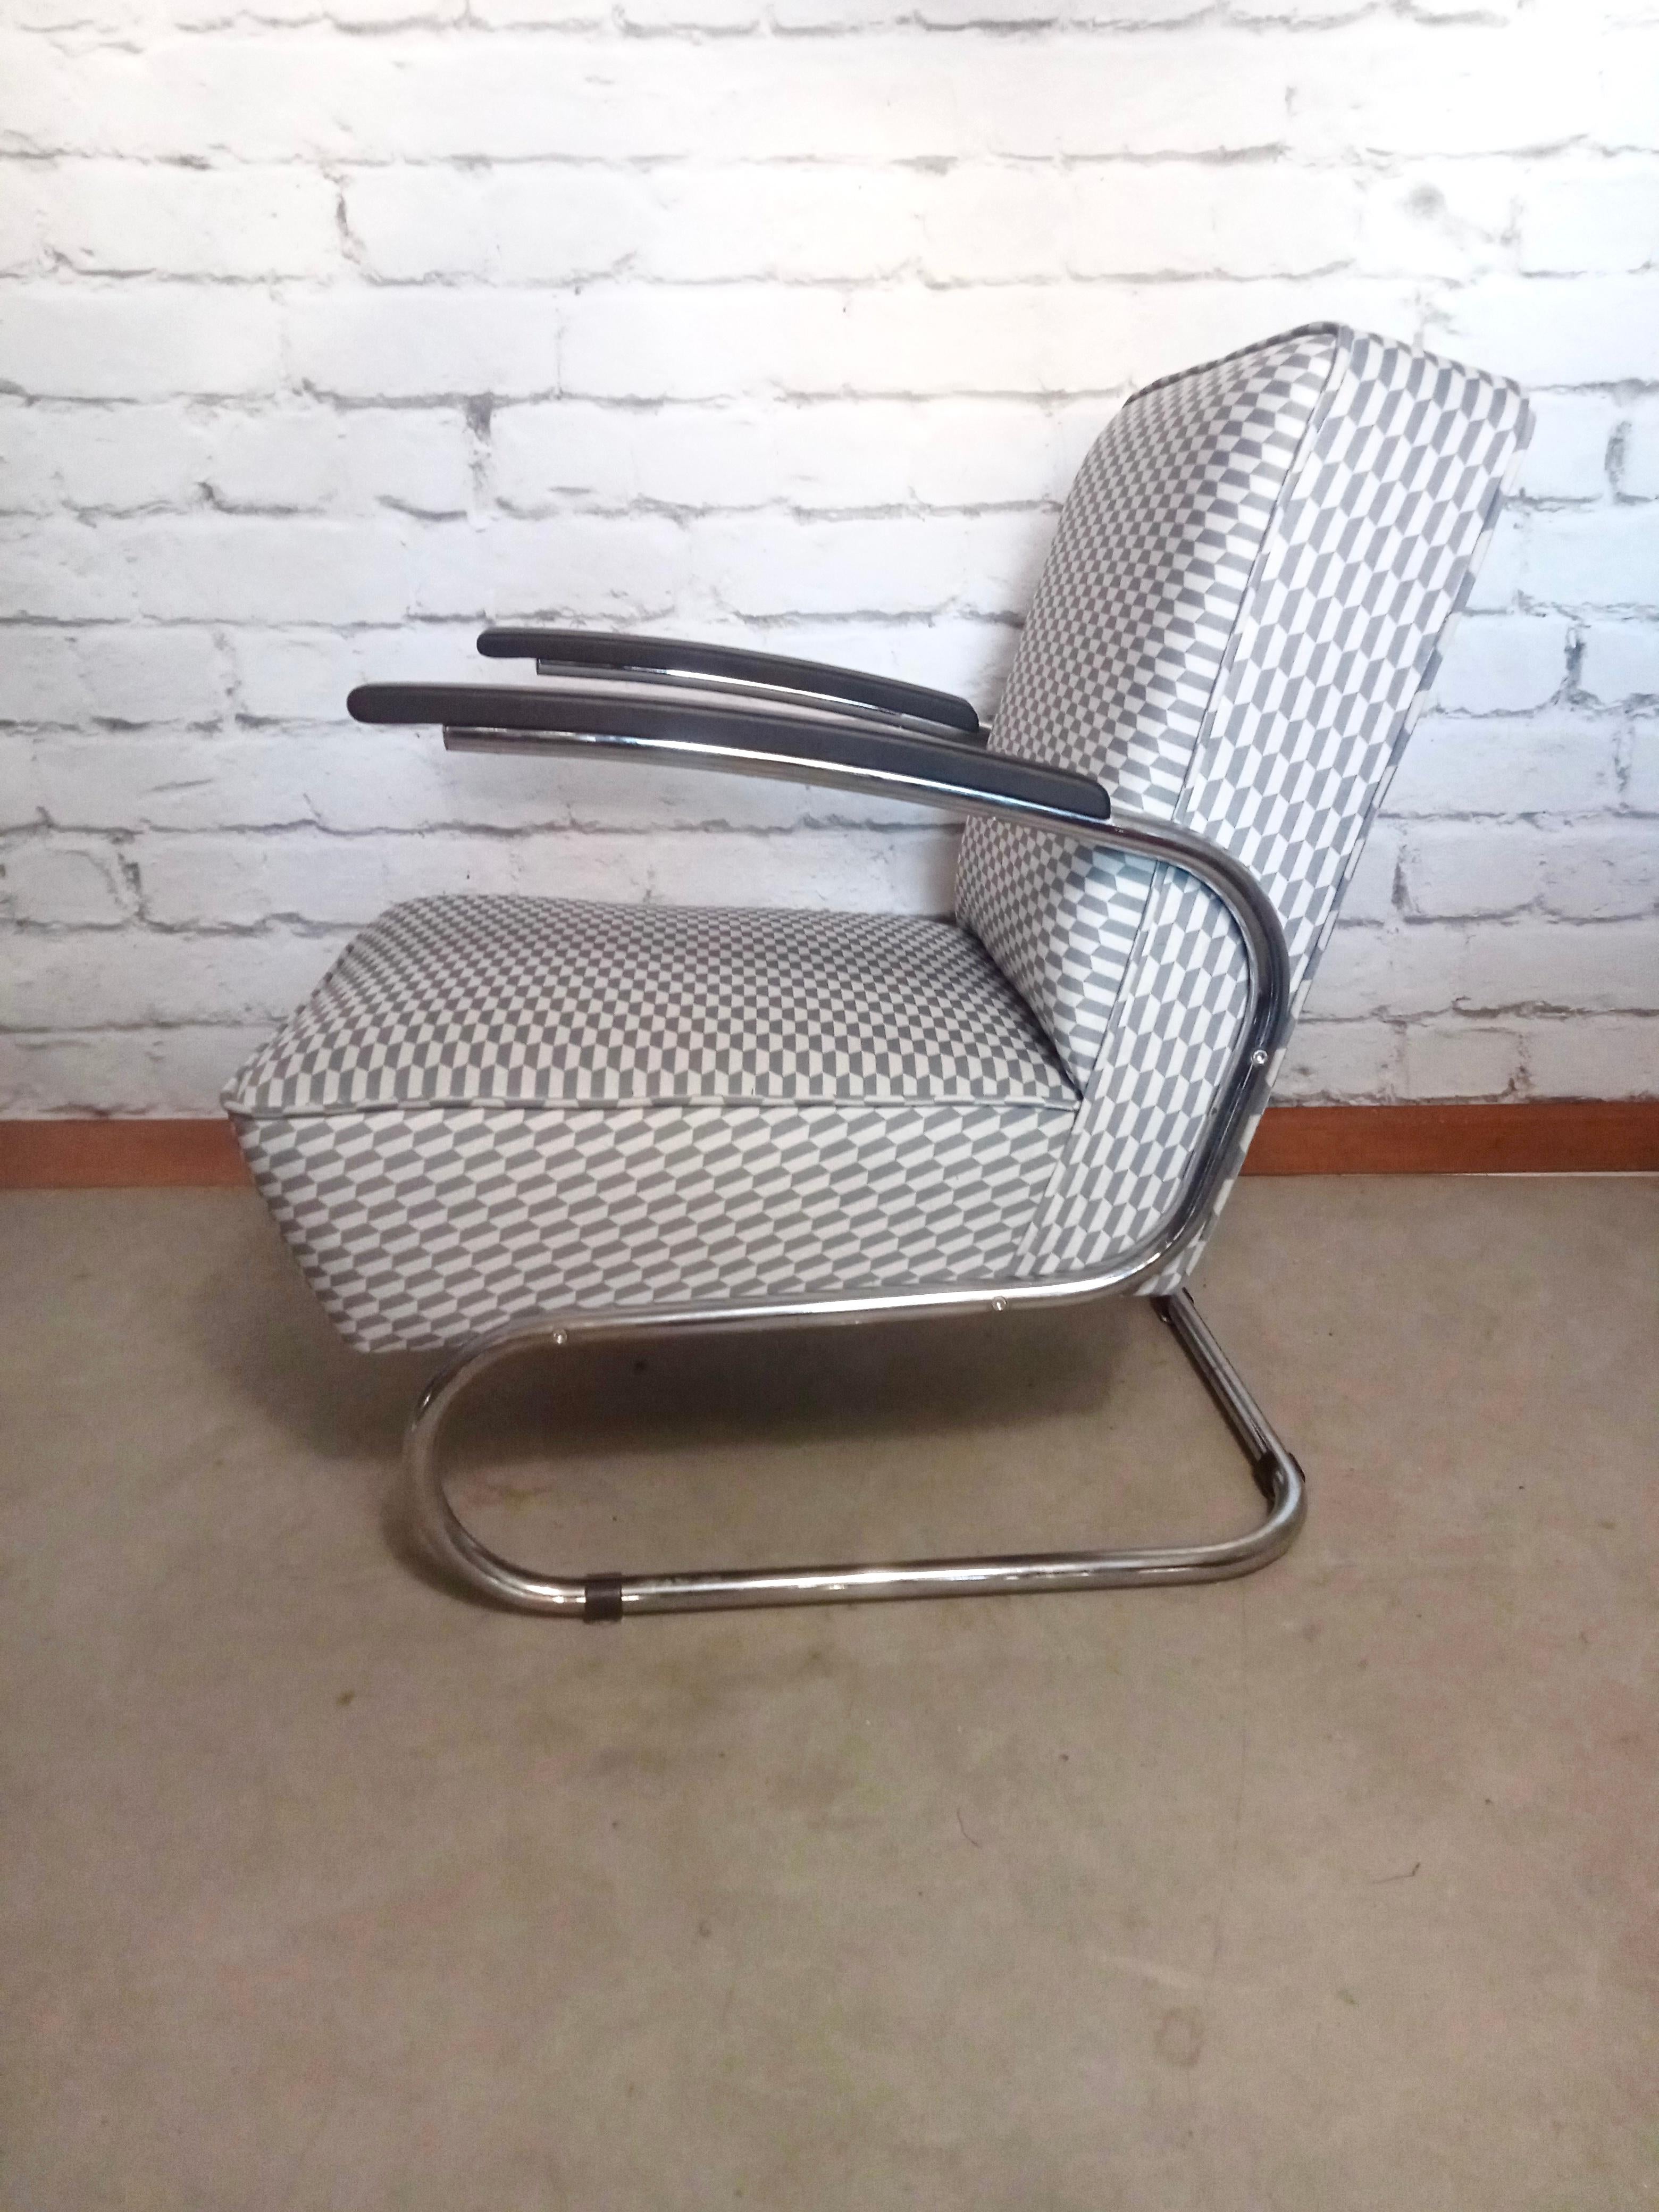 Les propriétés exceptionnelles de ce fauteuil sont l'élégance, l'intemporalité et un confort d'assise exceptionnel. Il s'y ajoute une légèreté que seul un modèle en porte-à-faux peut avoir. Conçu en 1932 par l'équipe de designers de Thonet. Sans